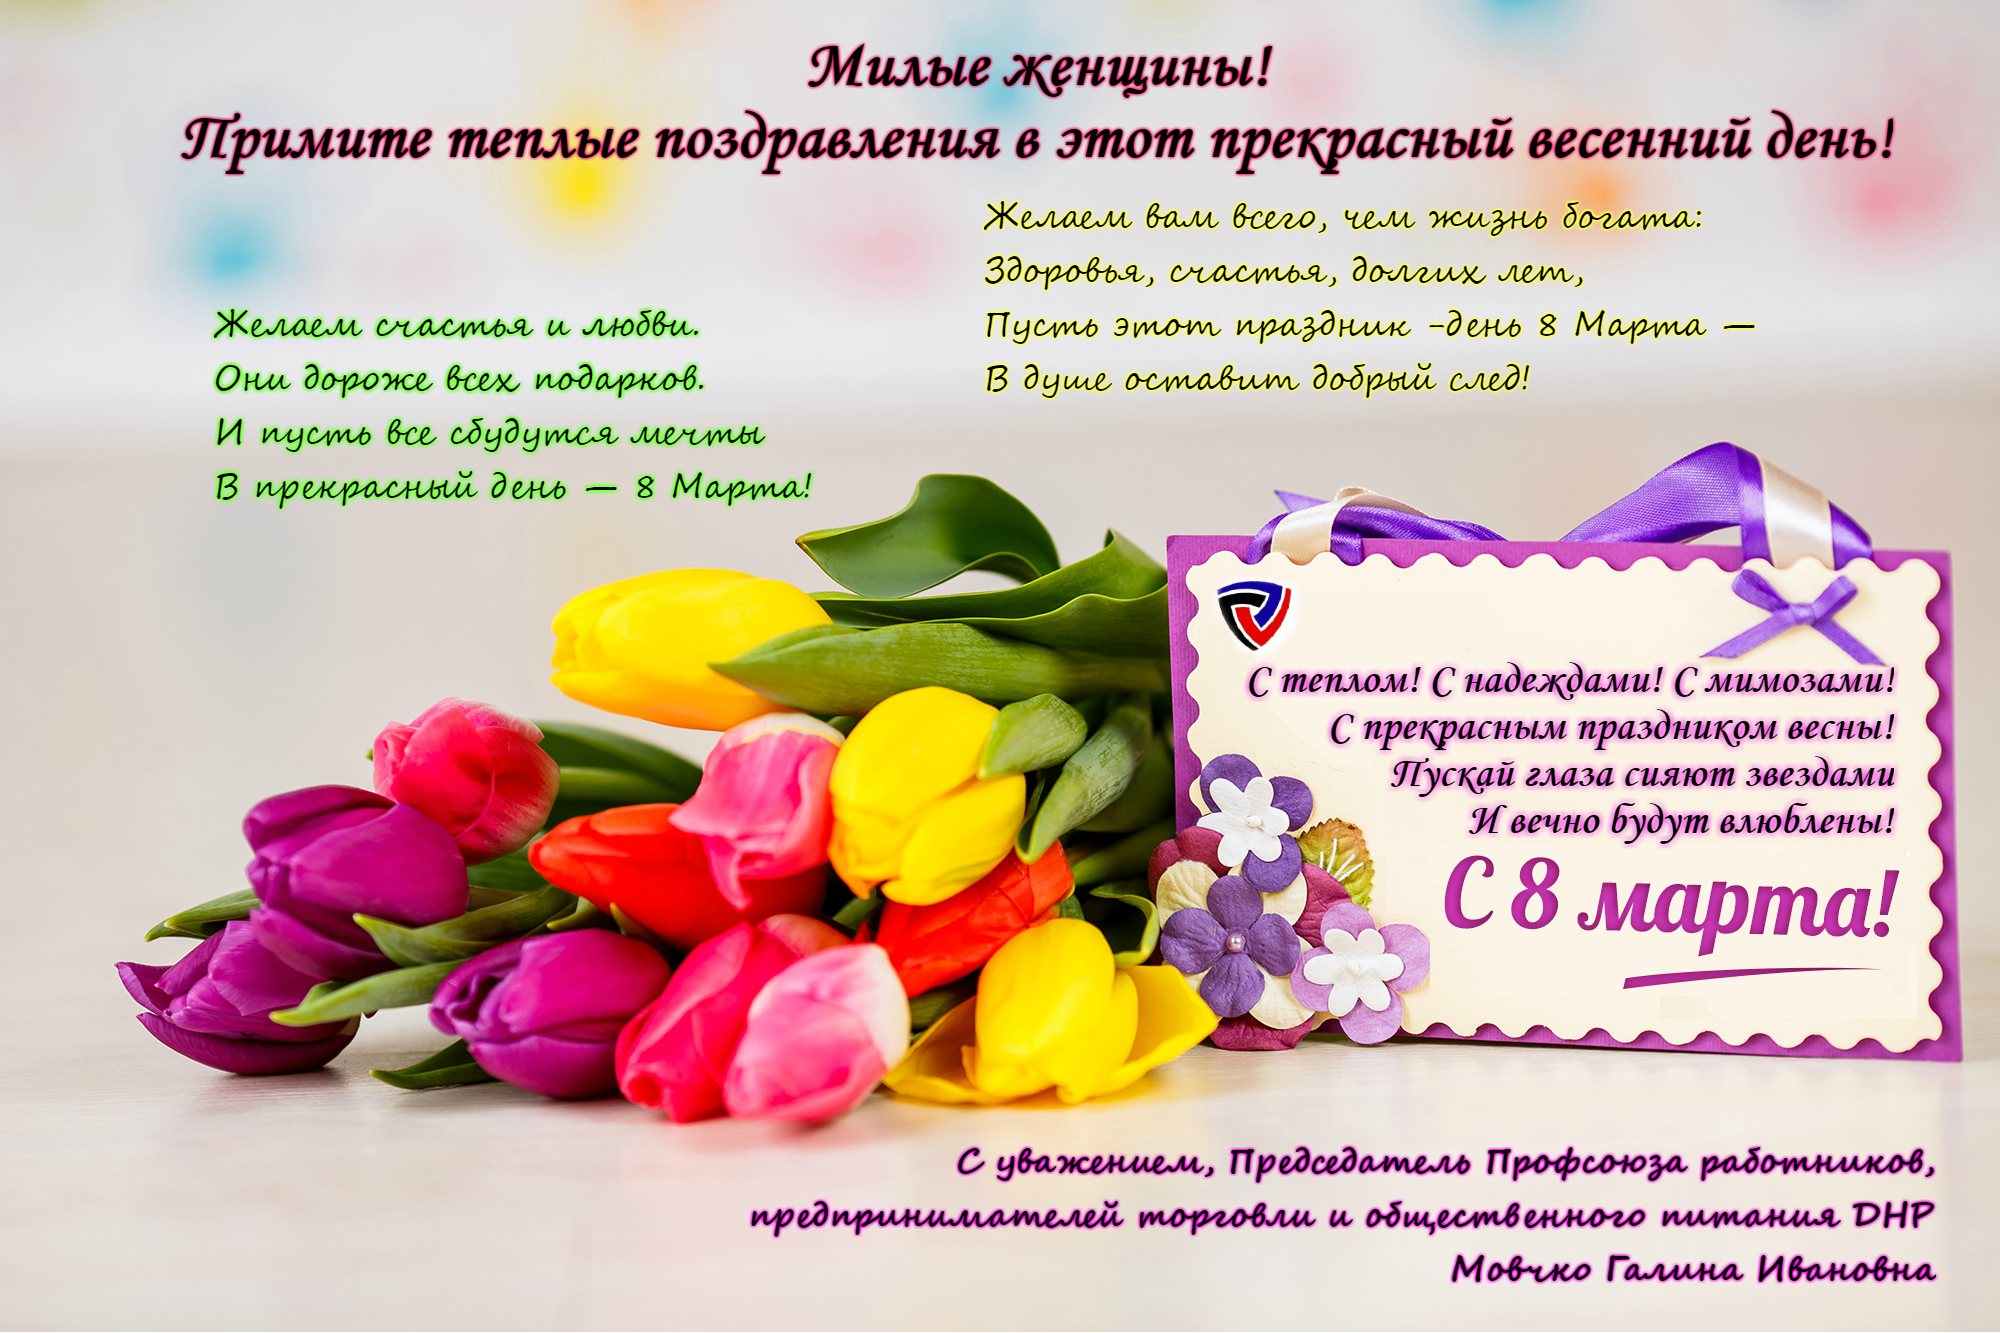 8 марта профсоюз предпринимателей ДНР